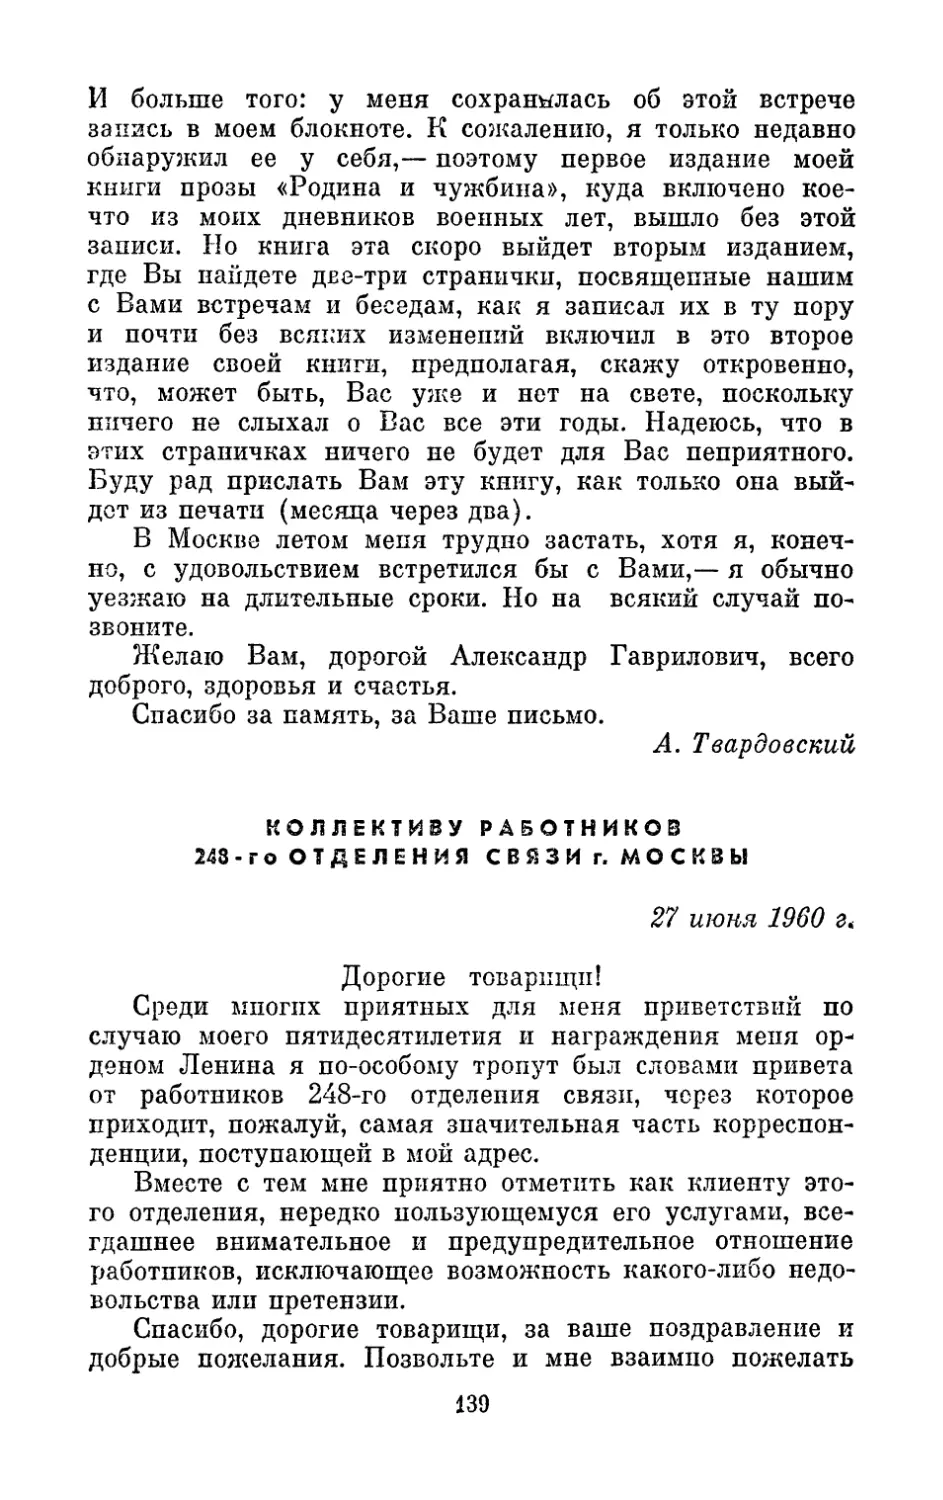 Коллективу работников 248-го отделения связи г. Москвы, 27 июня 1960 г.